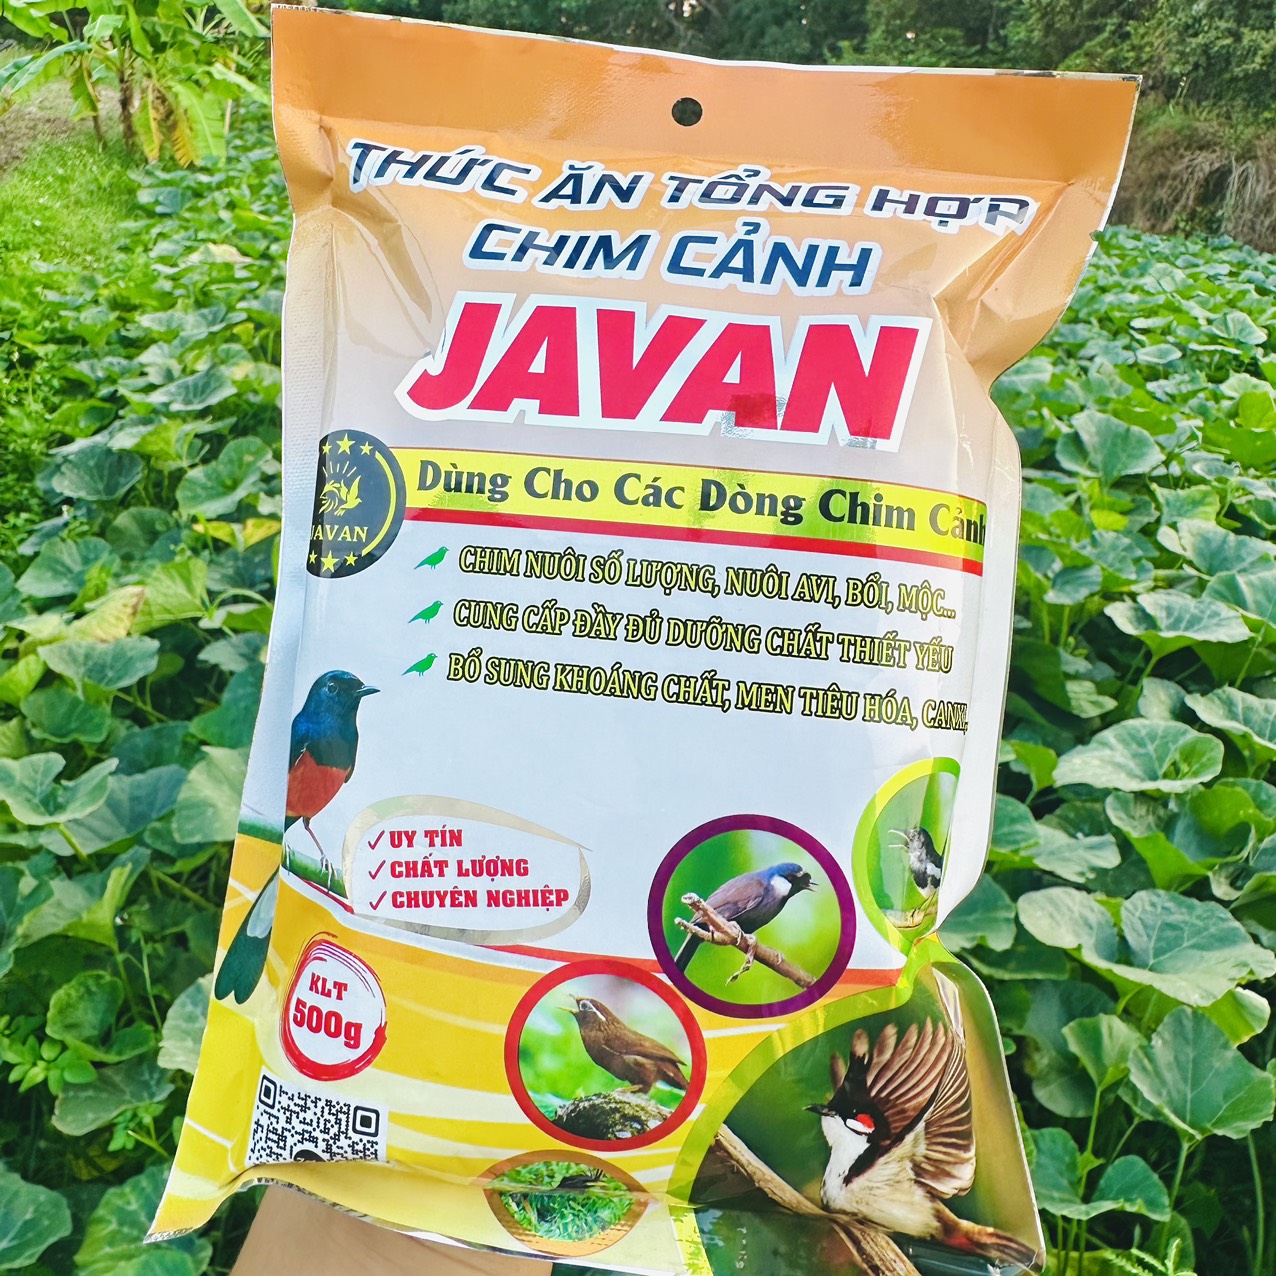 Cám tổng hợp Javan dùng được cho nhiều loại chim cảnh, 500gram thức ăn chim cảnh